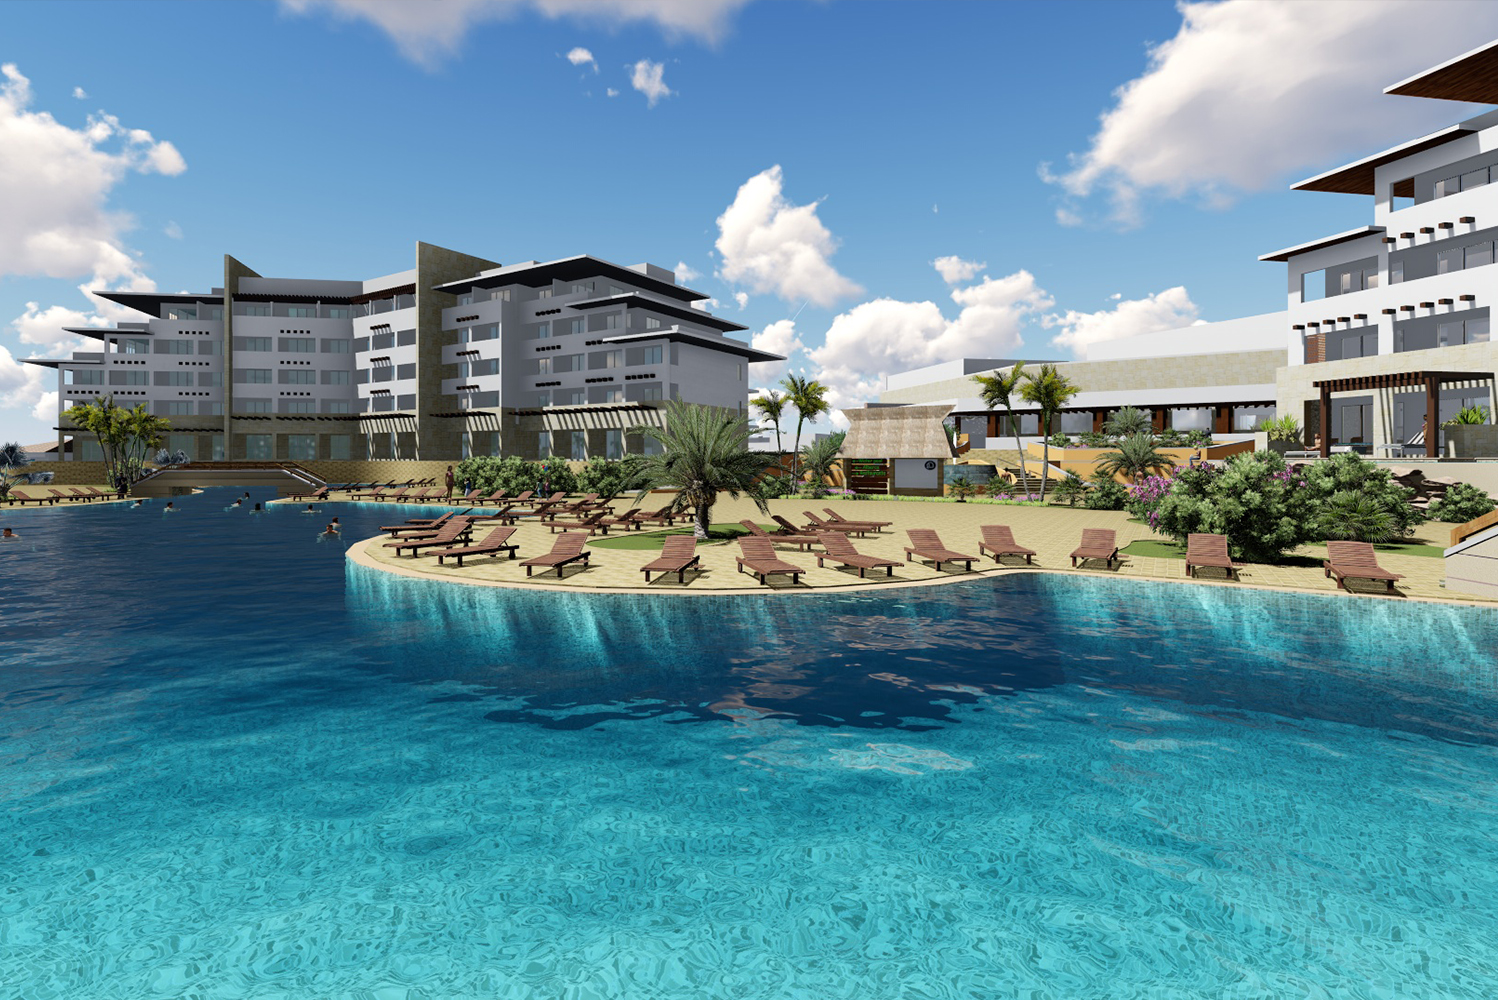 Ventus at Marina El Cid Spa  Beach Resort Cancn Riviera Maya is set to open this November 